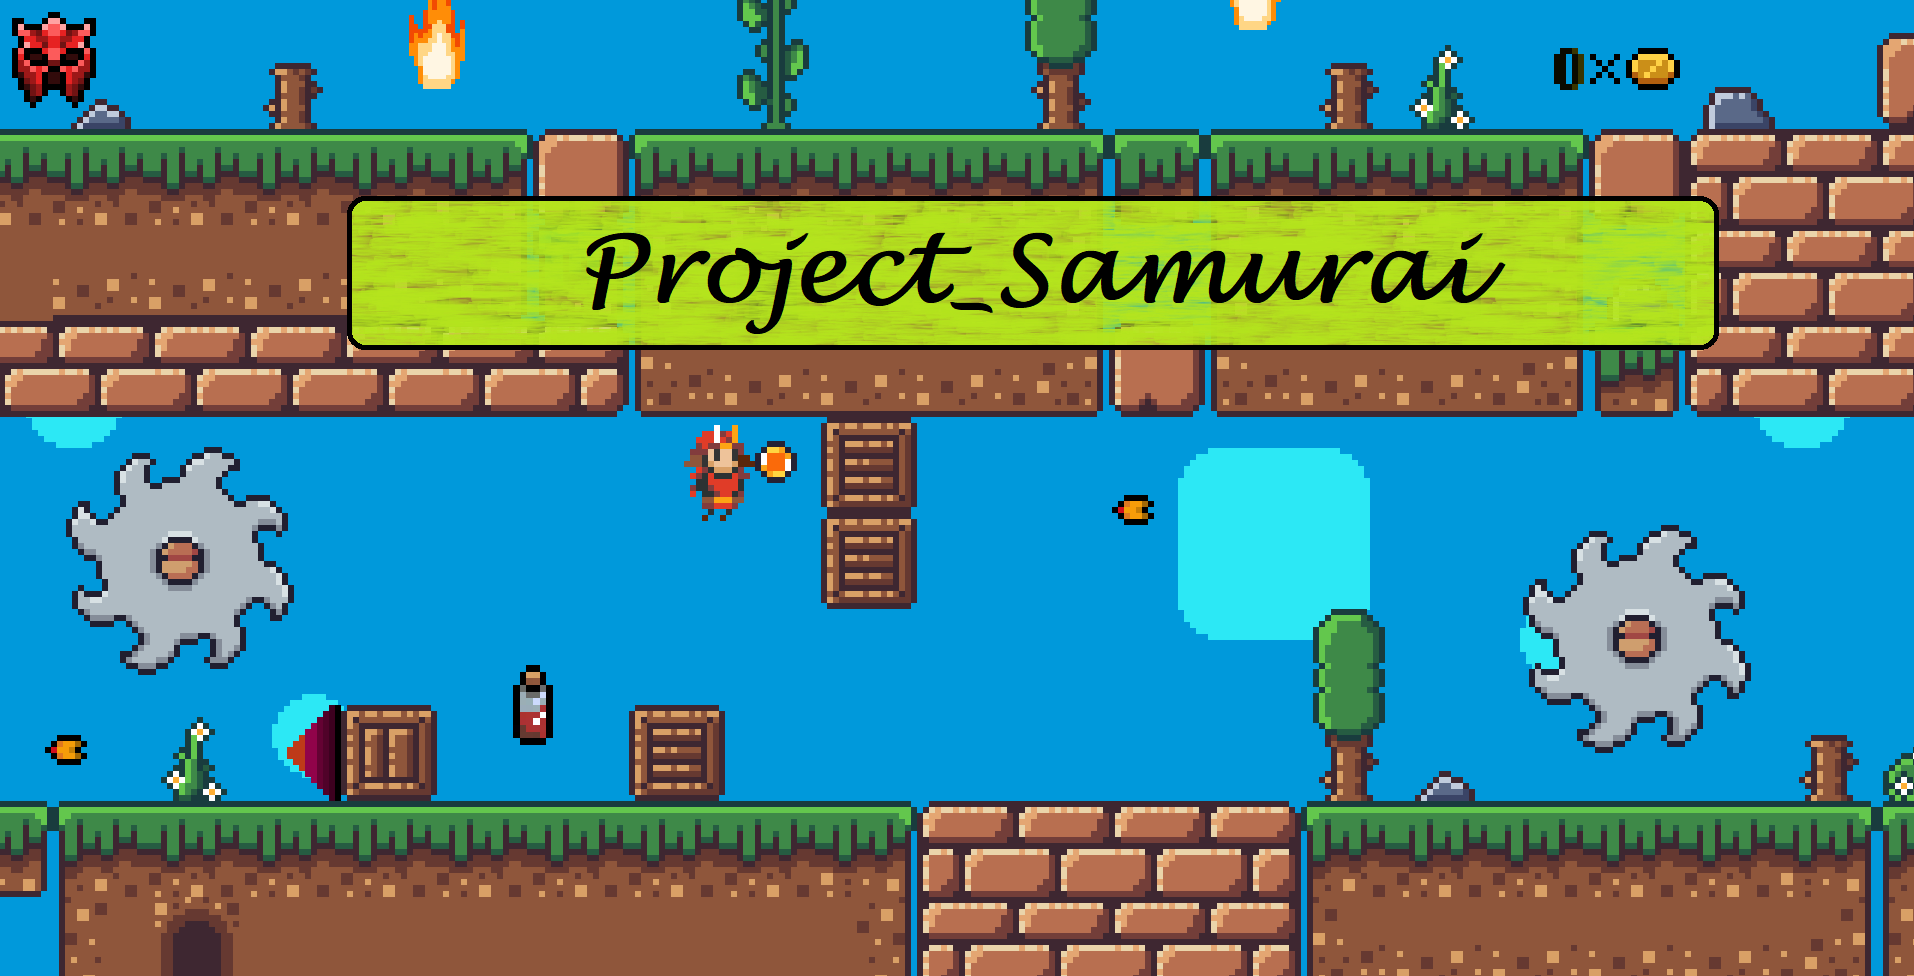 Project_Samurai